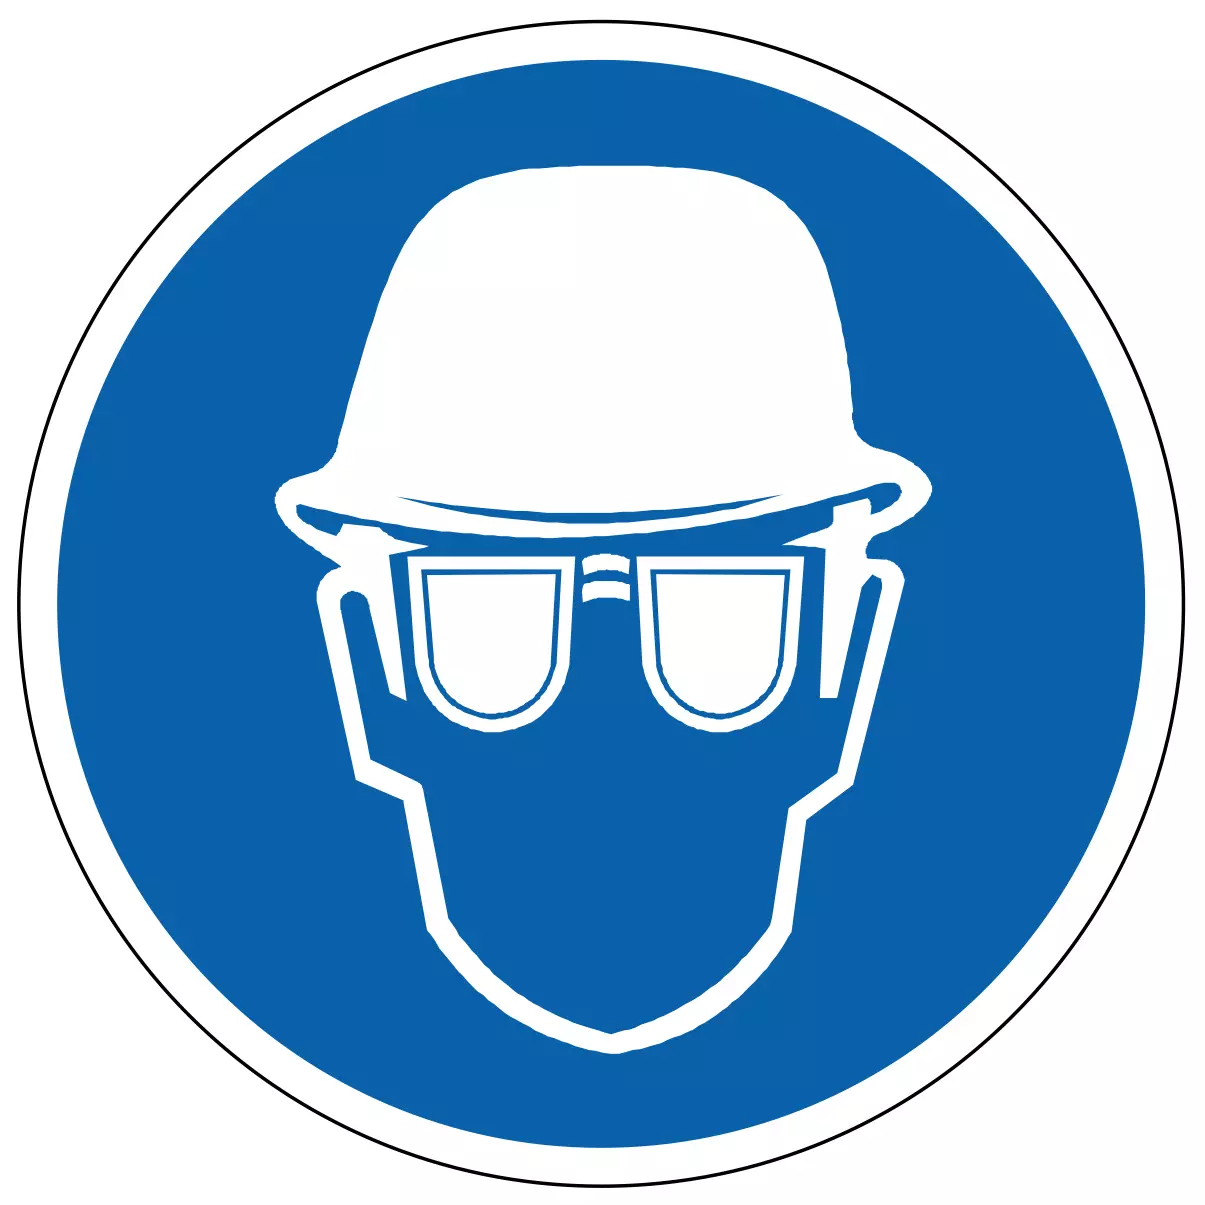 Port du casque et lunettes de protection - étiquettes et panneaux d'obligation et de consigne